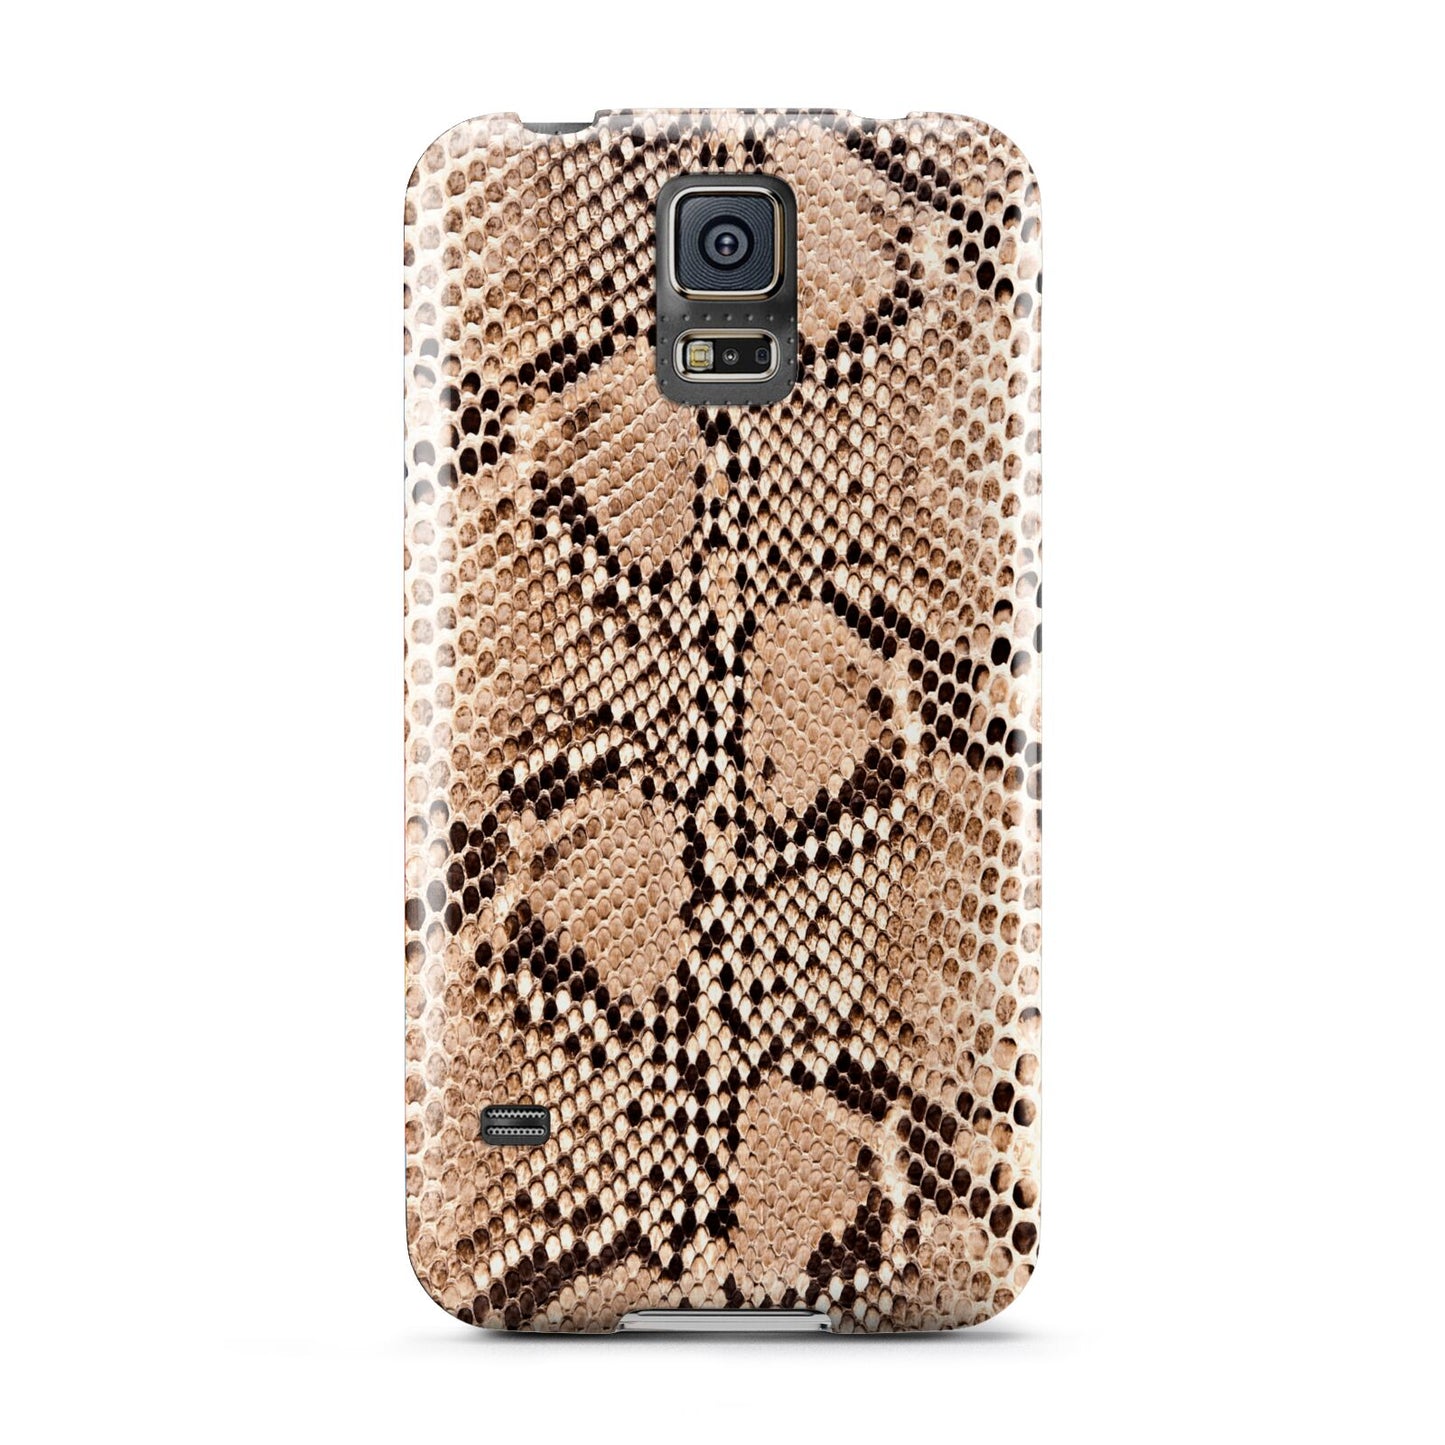 Snakeskin Samsung Galaxy S5 Case